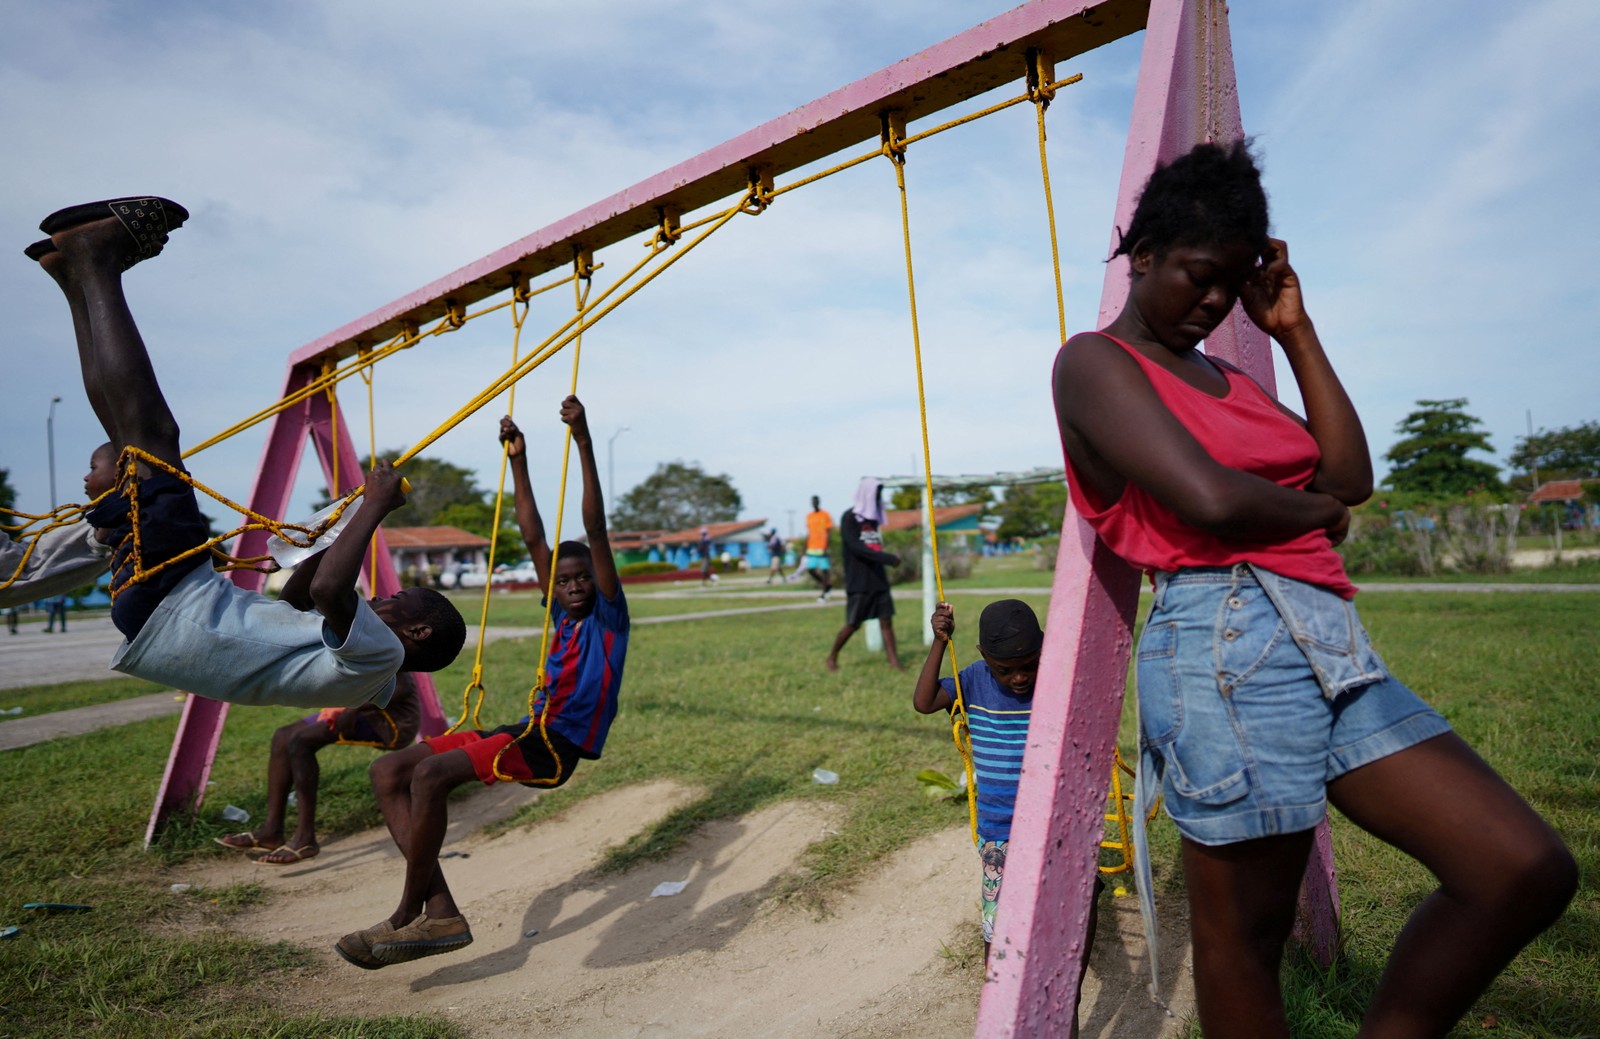 Imigrantes haitianos brincam em uma área de acampamento turística operada pelo governo cubano depois que seu barco com destino aos Estados Unidos se desviou do curso e foi parar na costa norte de Cuba, em Sierra Morena, Cuba  — Foto: ALEXANDRE MENEGHINI / REUTERS